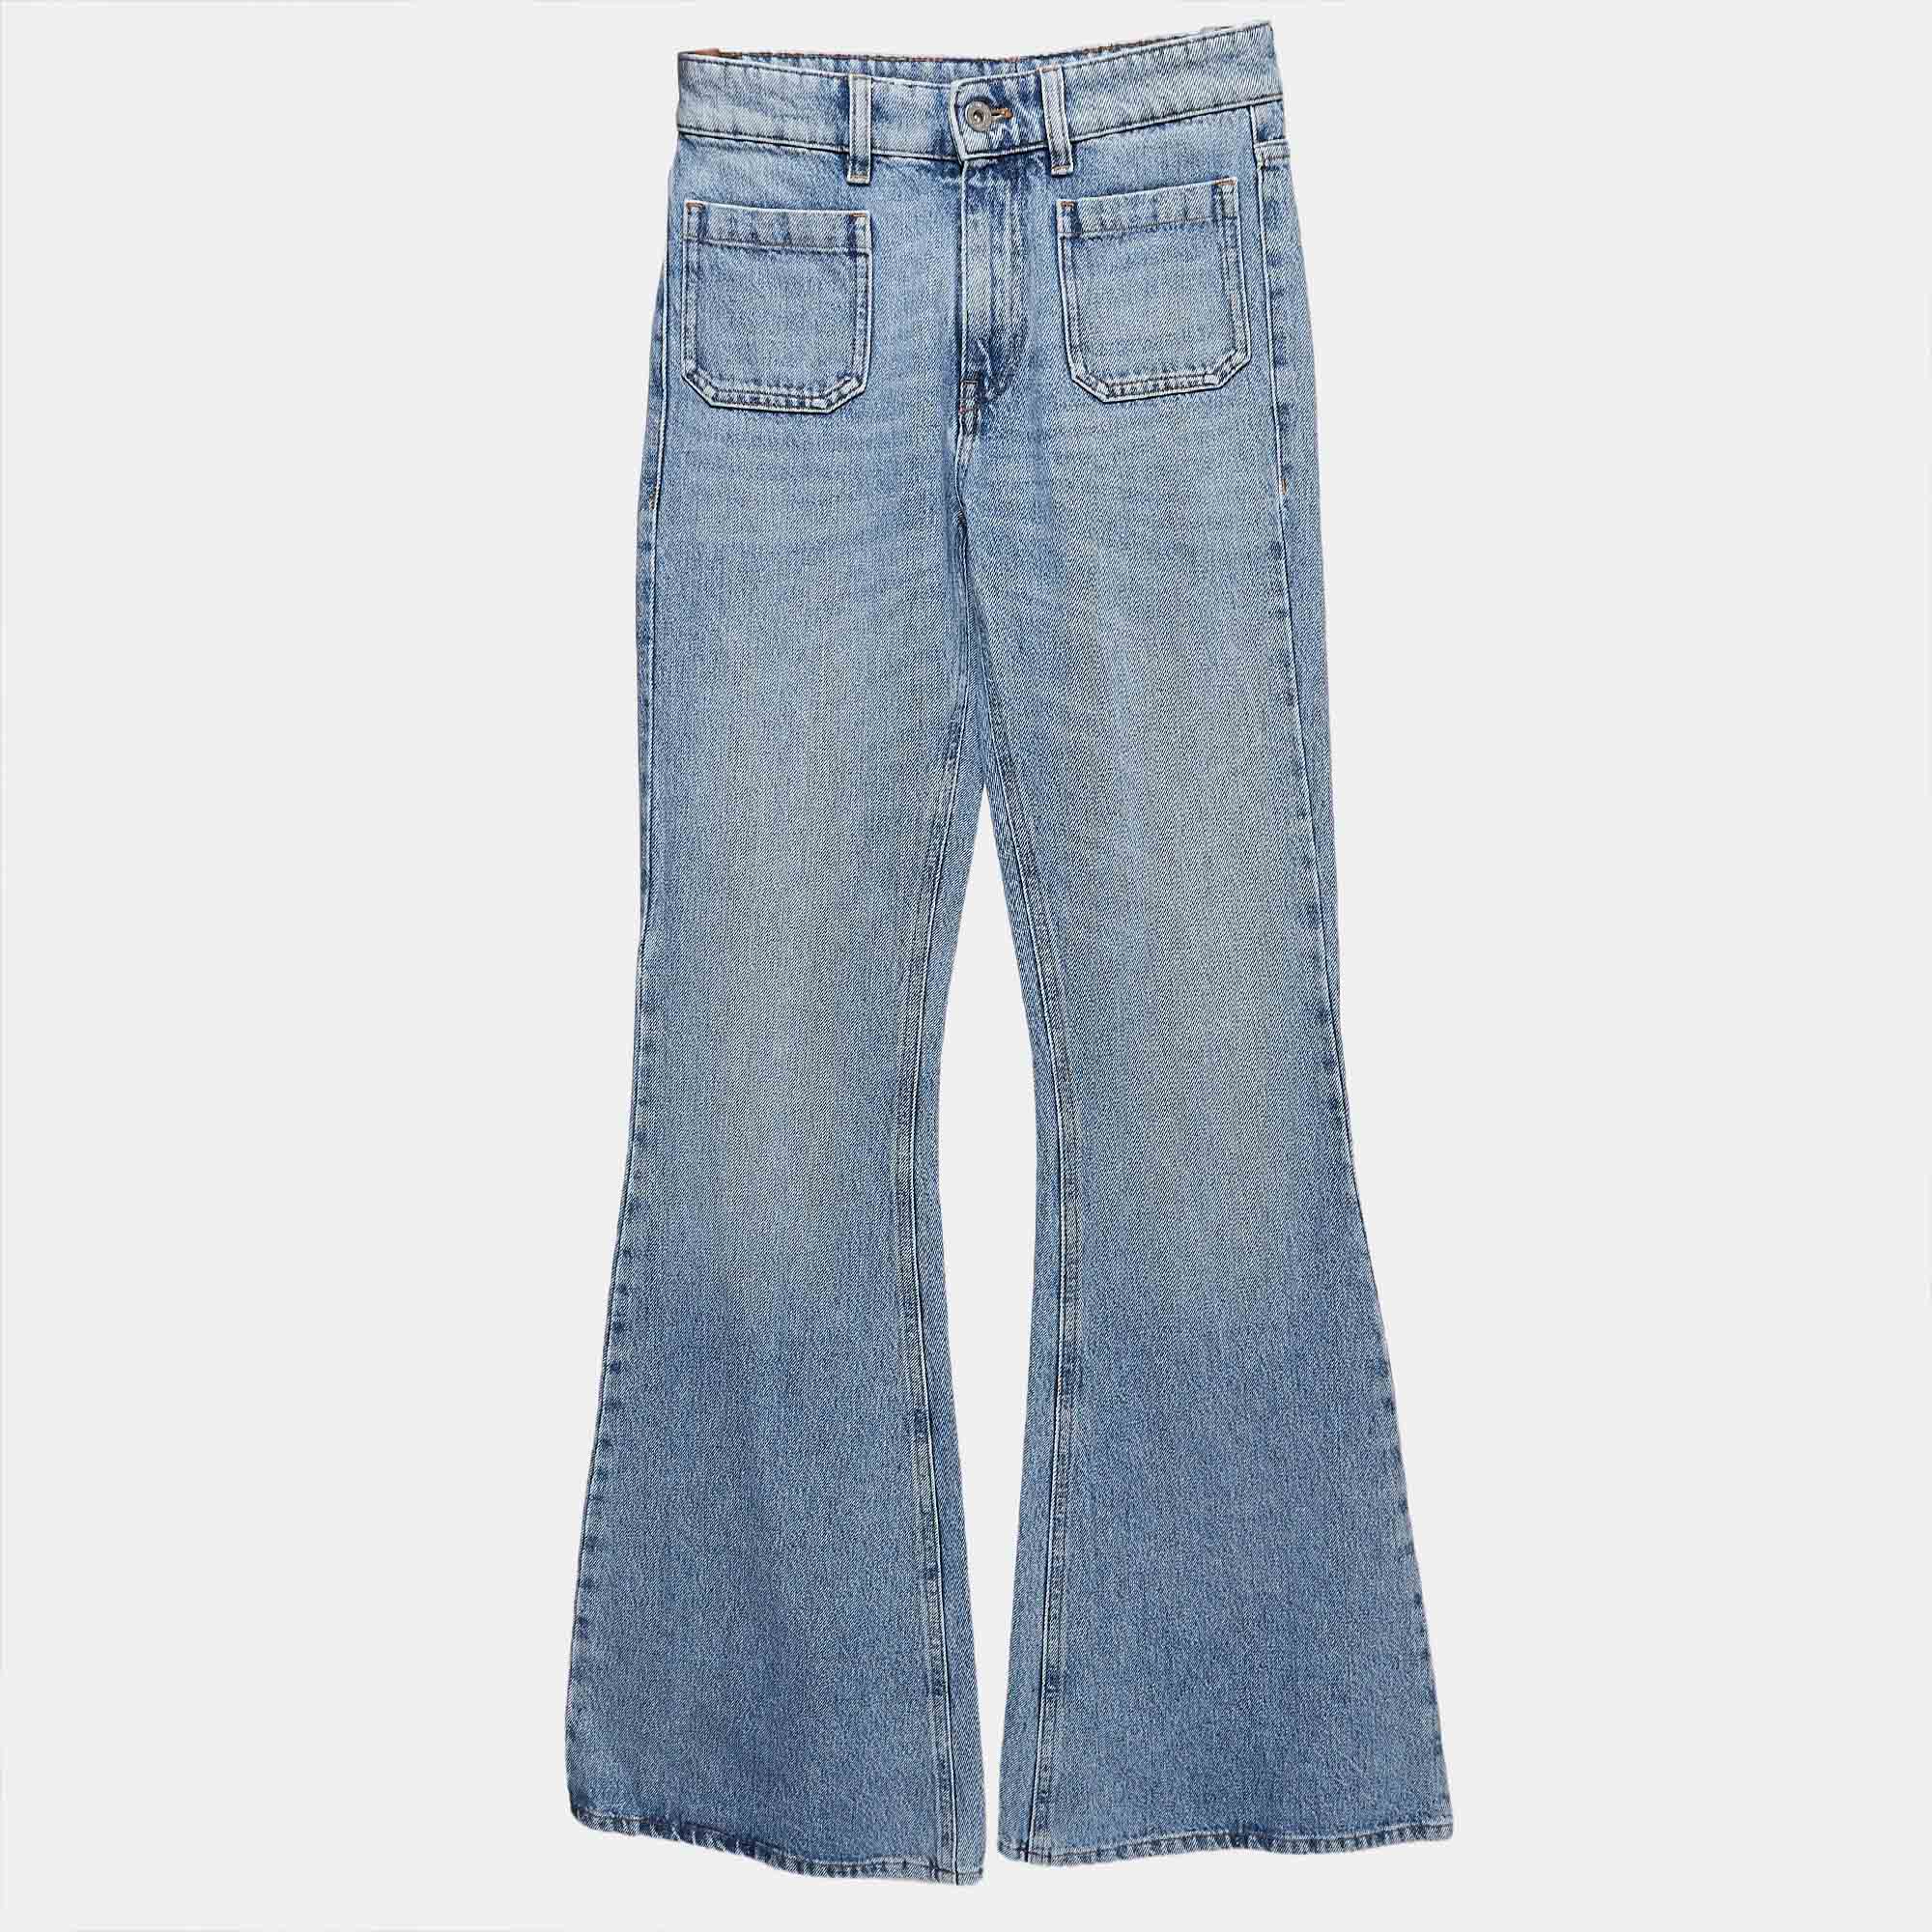 

Miu Miu Blue Washed Denim Flared Jeans S Waist 24"